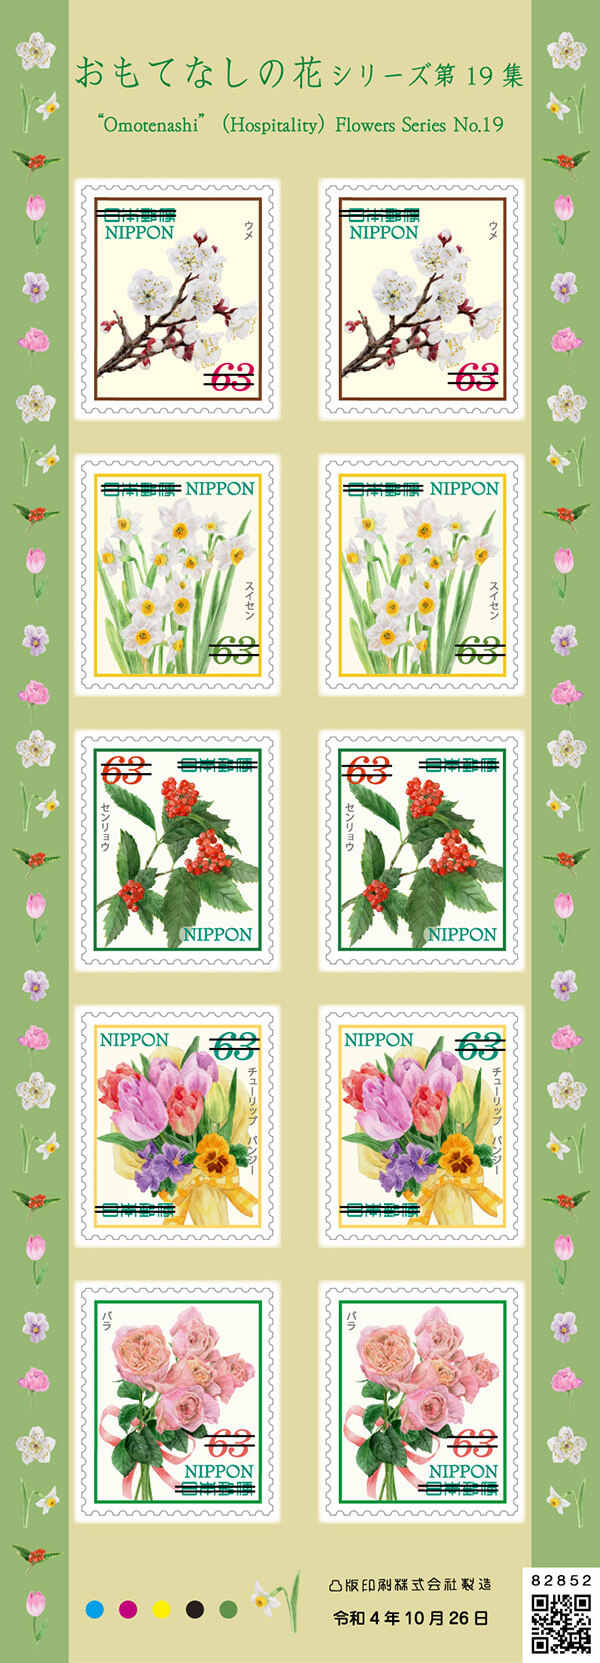 「おもてなしの花シリーズ 第19集」63円郵便切手（左）／2022年10月26日発行